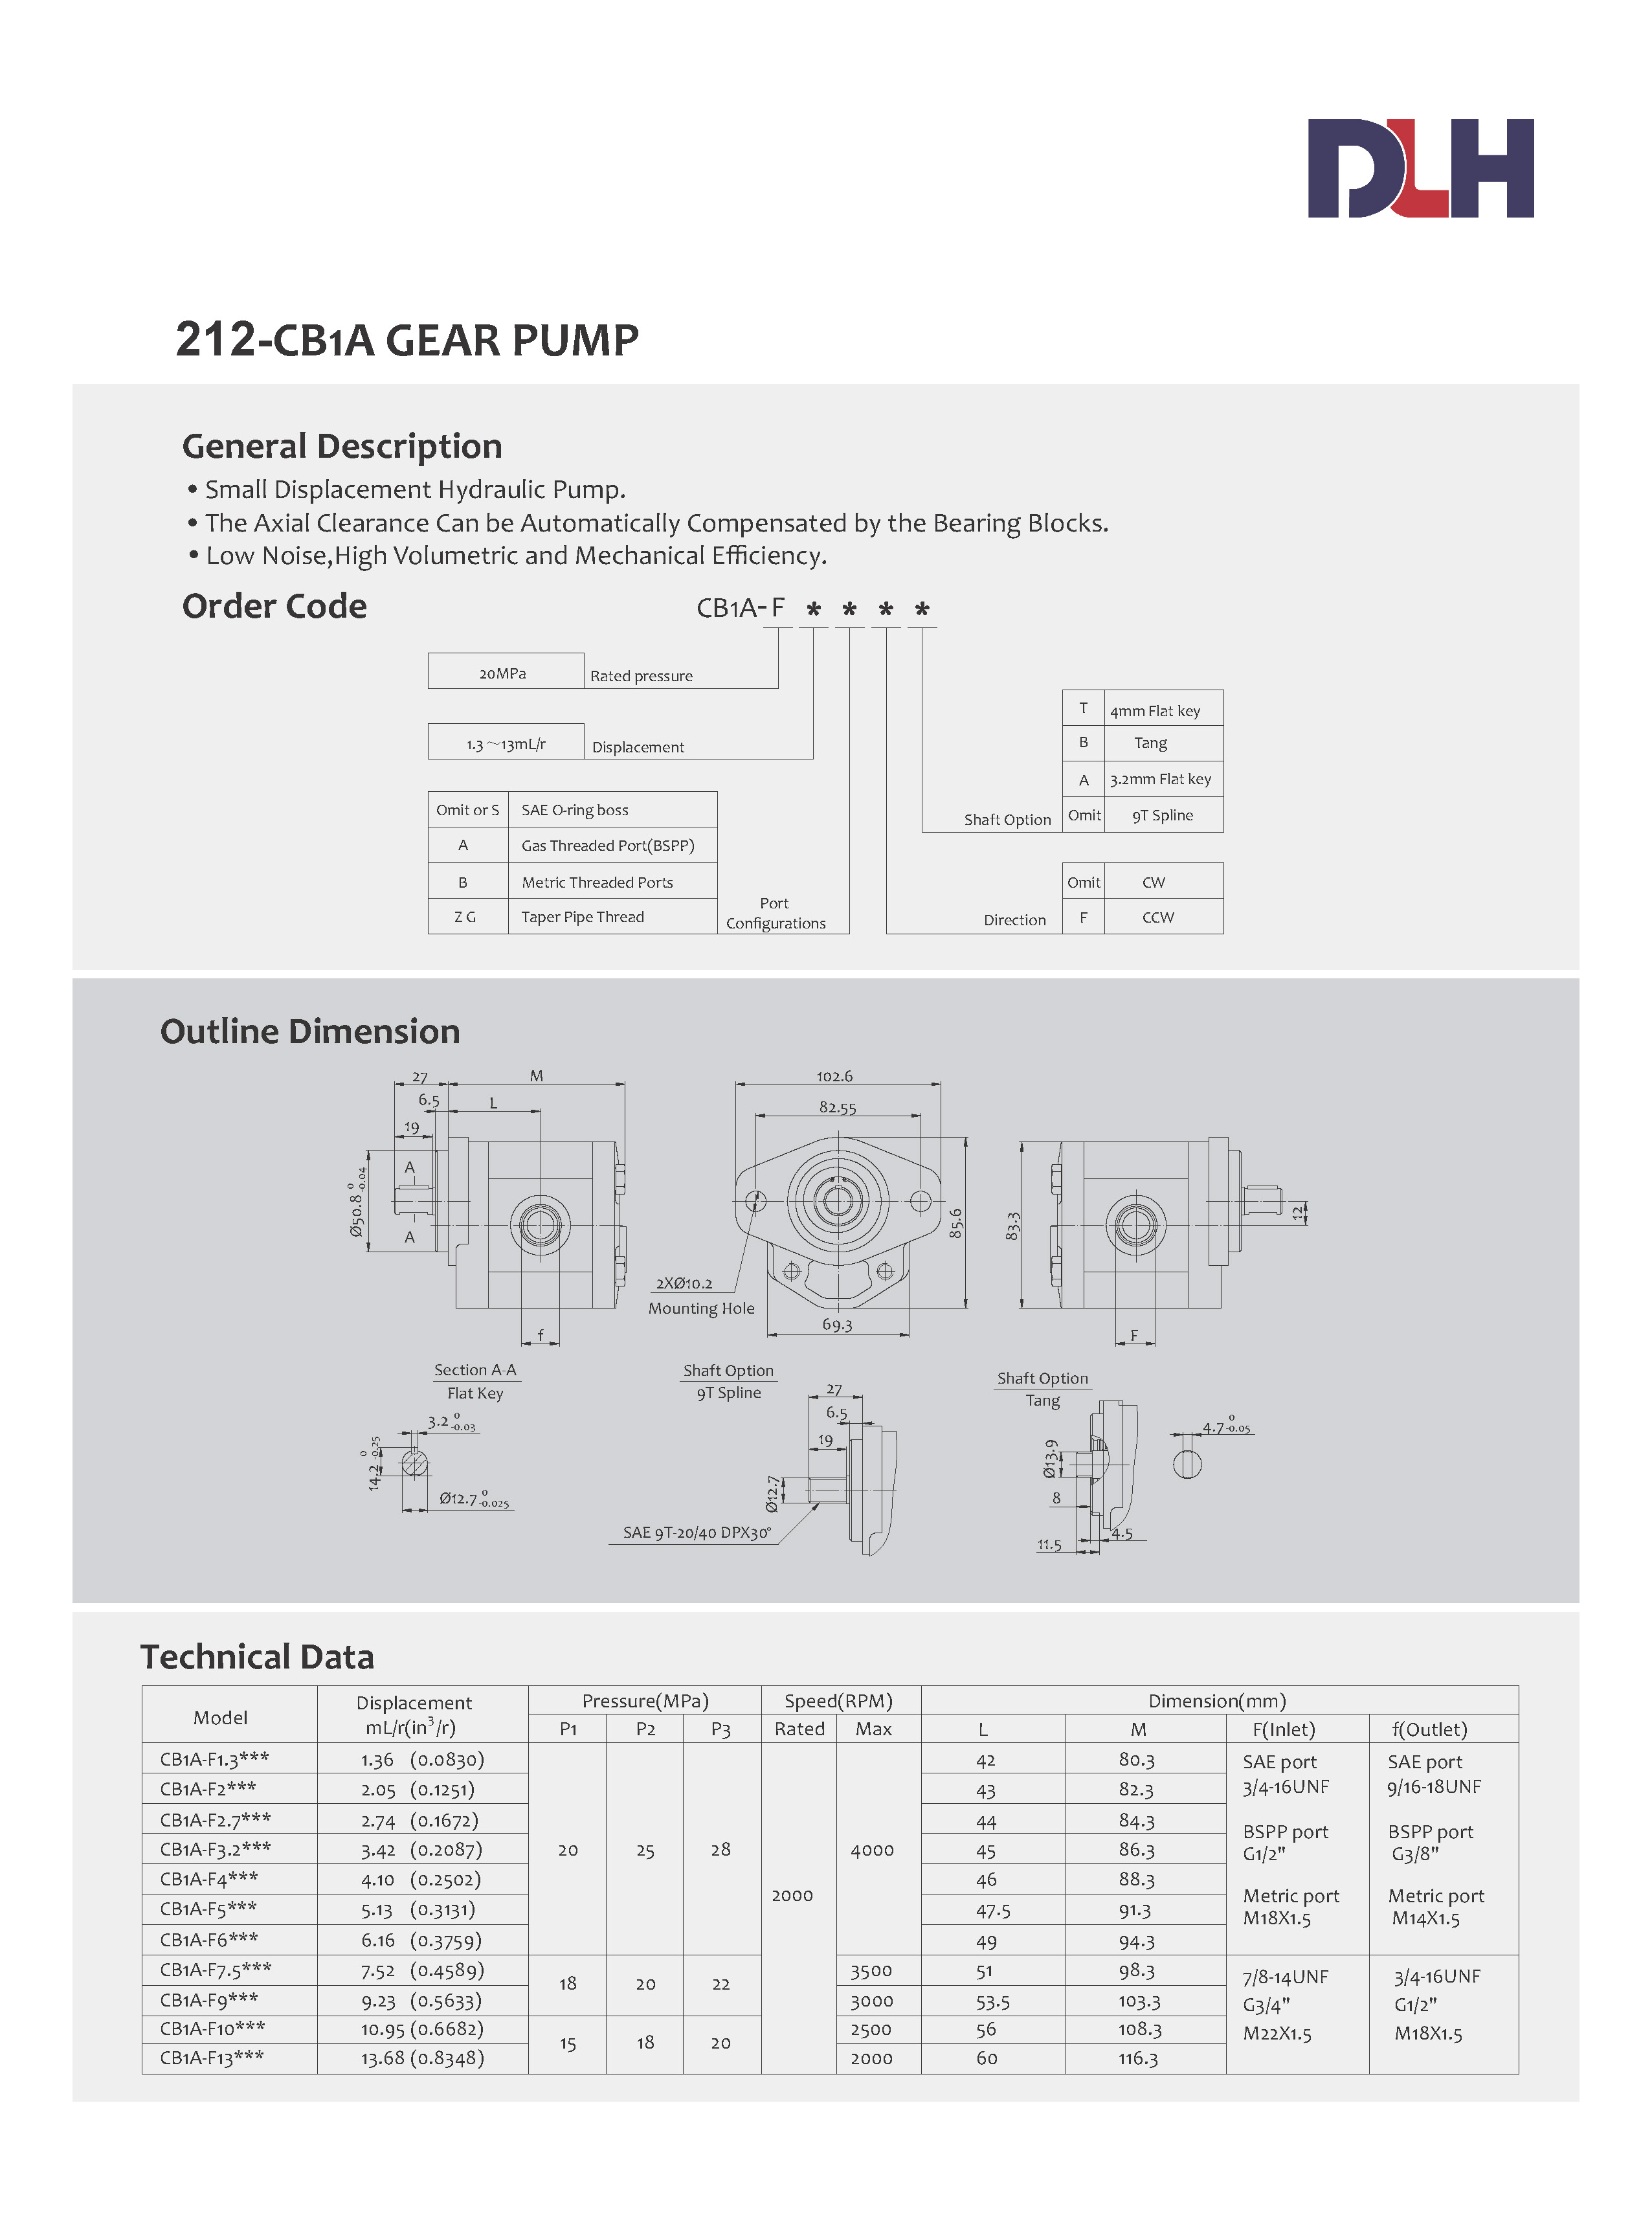 CB1A Gear Pump